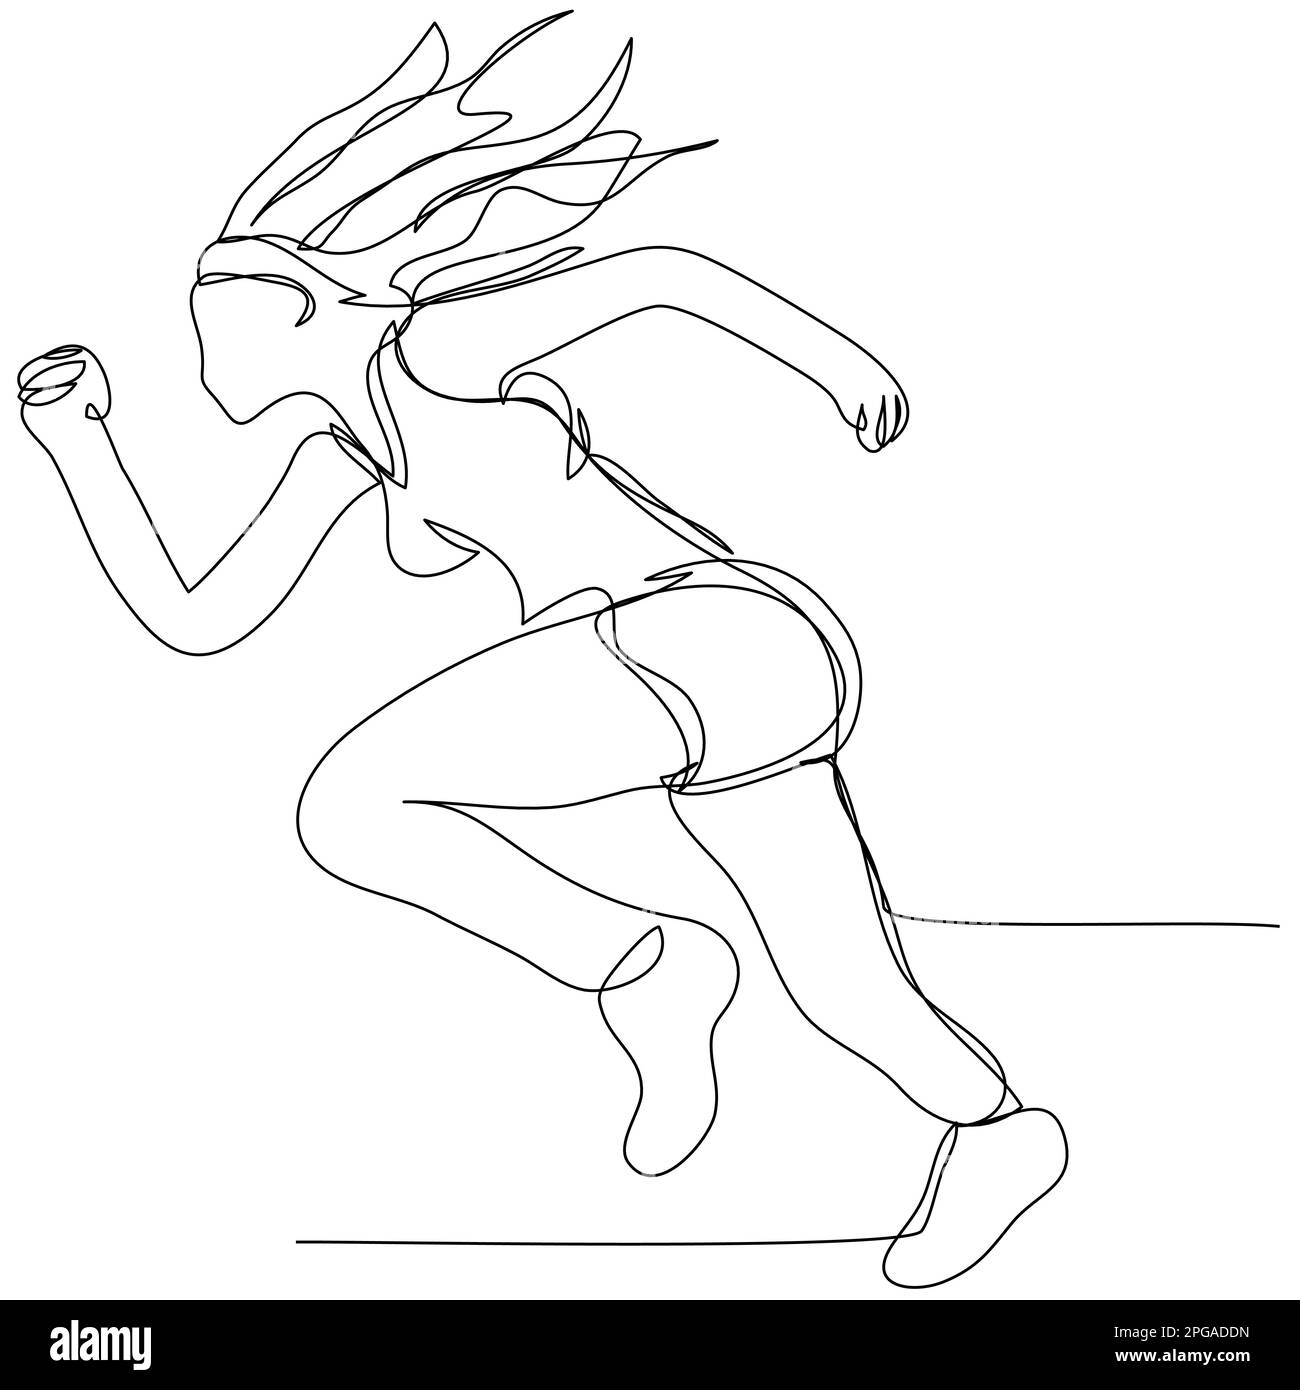 Running sportswoman in una linea su uno sfondo bianco. Il concetto di una ragazza che conduce uno stile di vita sano. Illustrazione vettoriale stock con stro modificabile Illustrazione Vettoriale